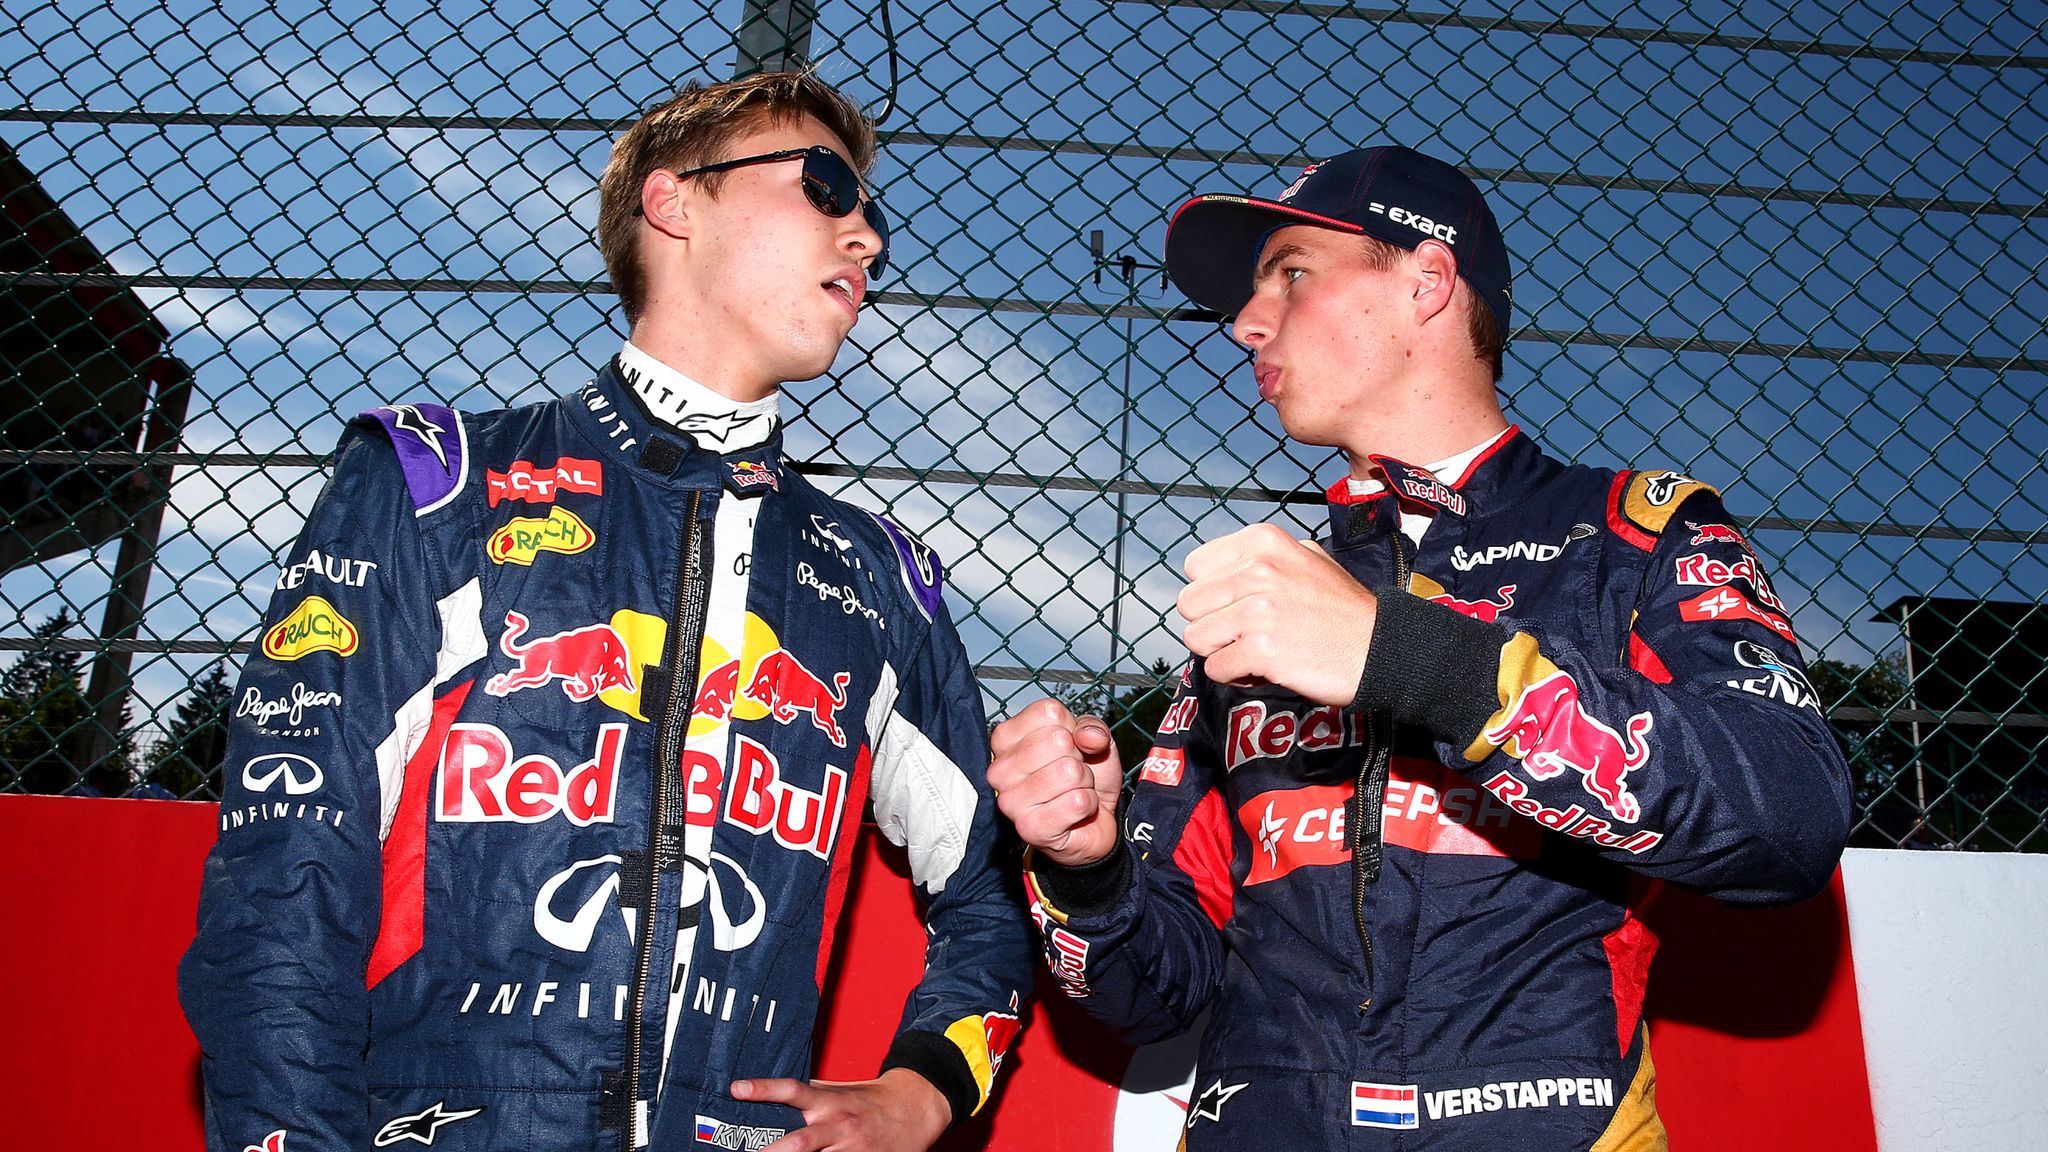 Retouch i morgen Som regel Max Verstappen and Daniil Kvyat's Red Bull swap: Ted Kravitz Q&A | F1 News